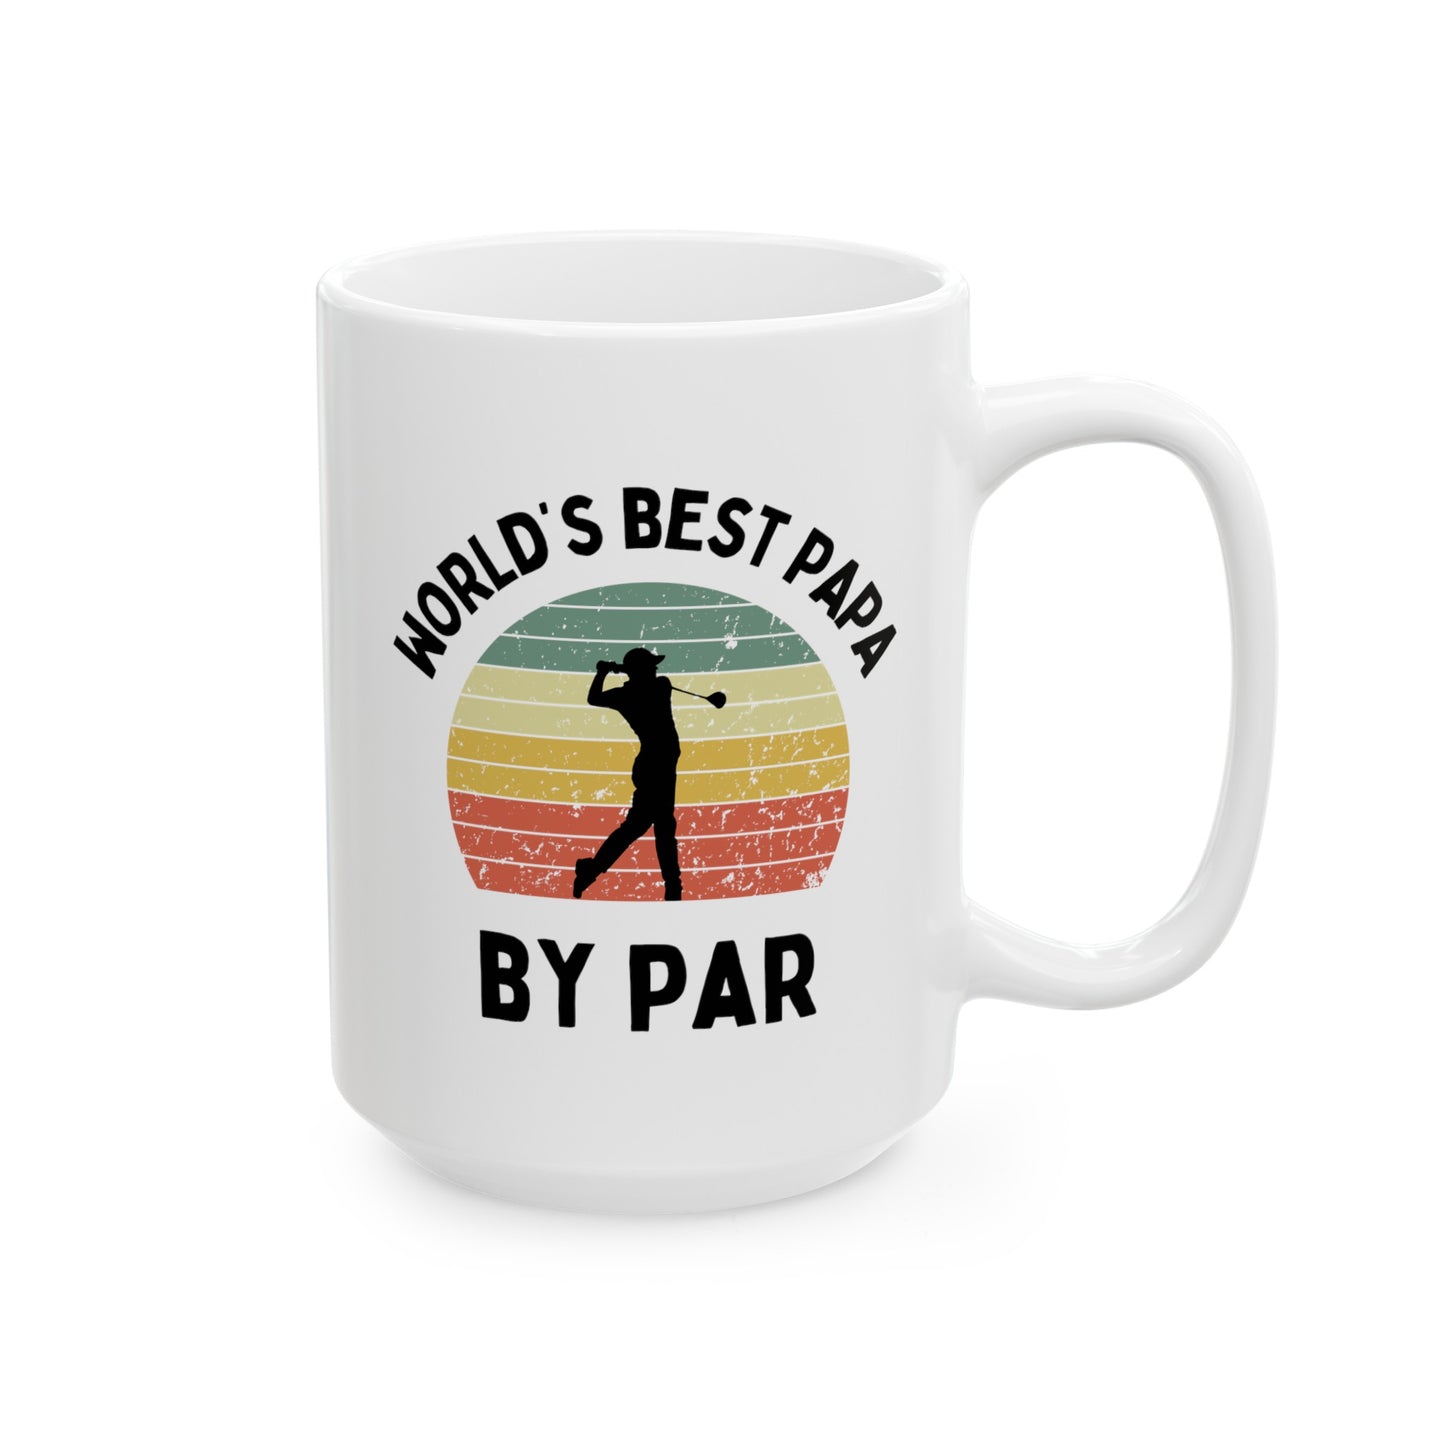 World's Best Papa By Par 15oz white funny large big coffee mug tea cup gift for him golfer vintage sunset golf men him grandad grandpa pops father's day waveywares wavey wares wavywares wavy wares